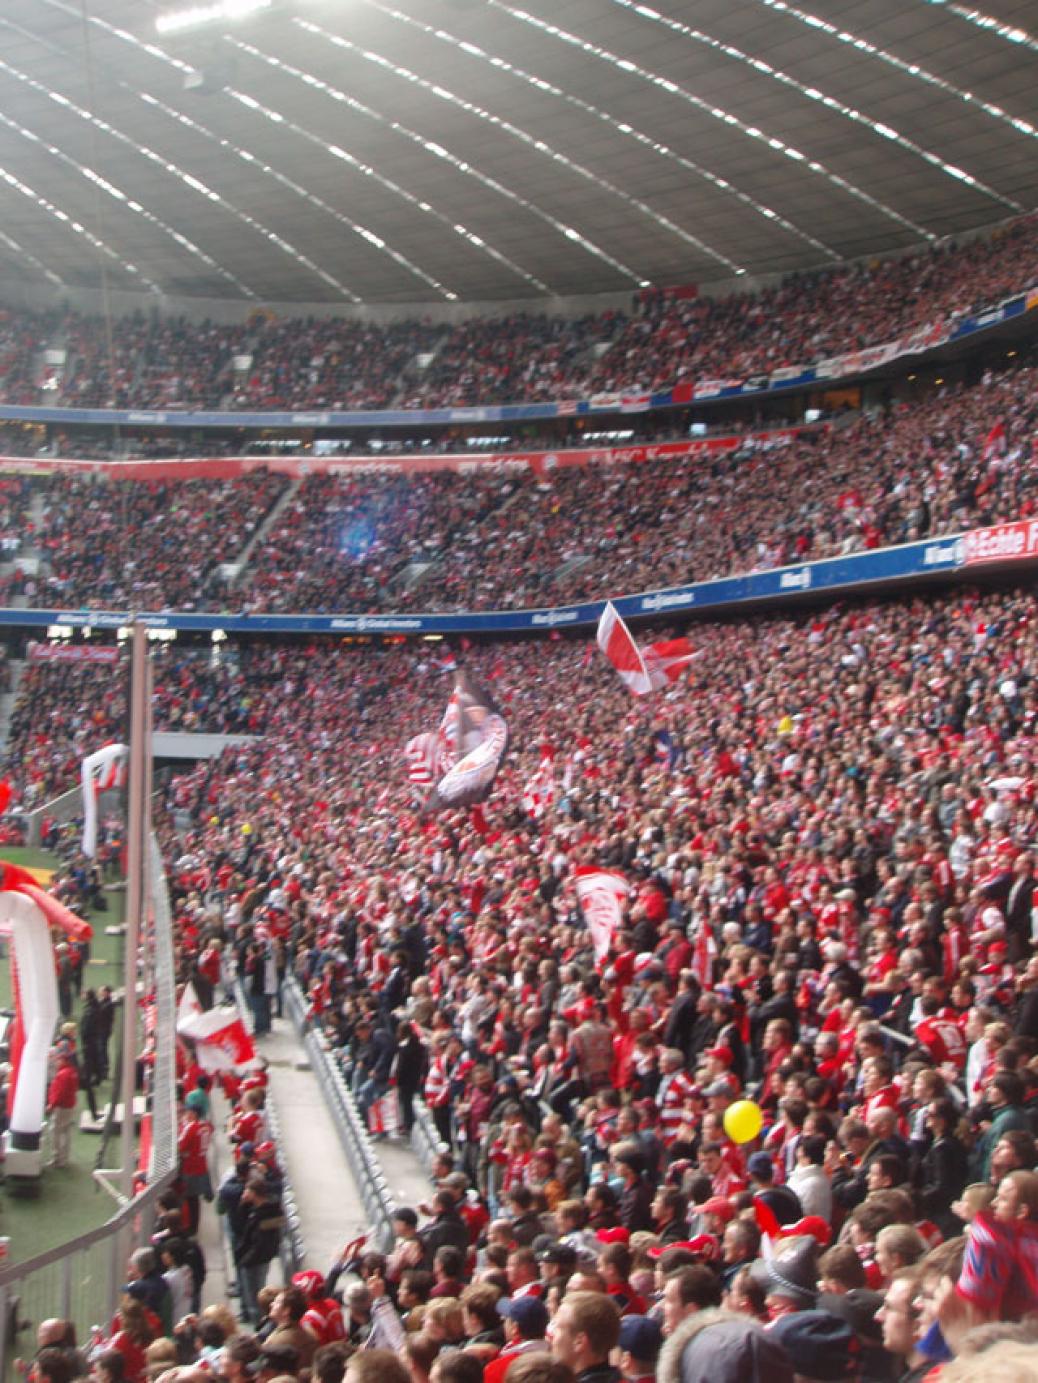 FCB – VfB Stuttgart